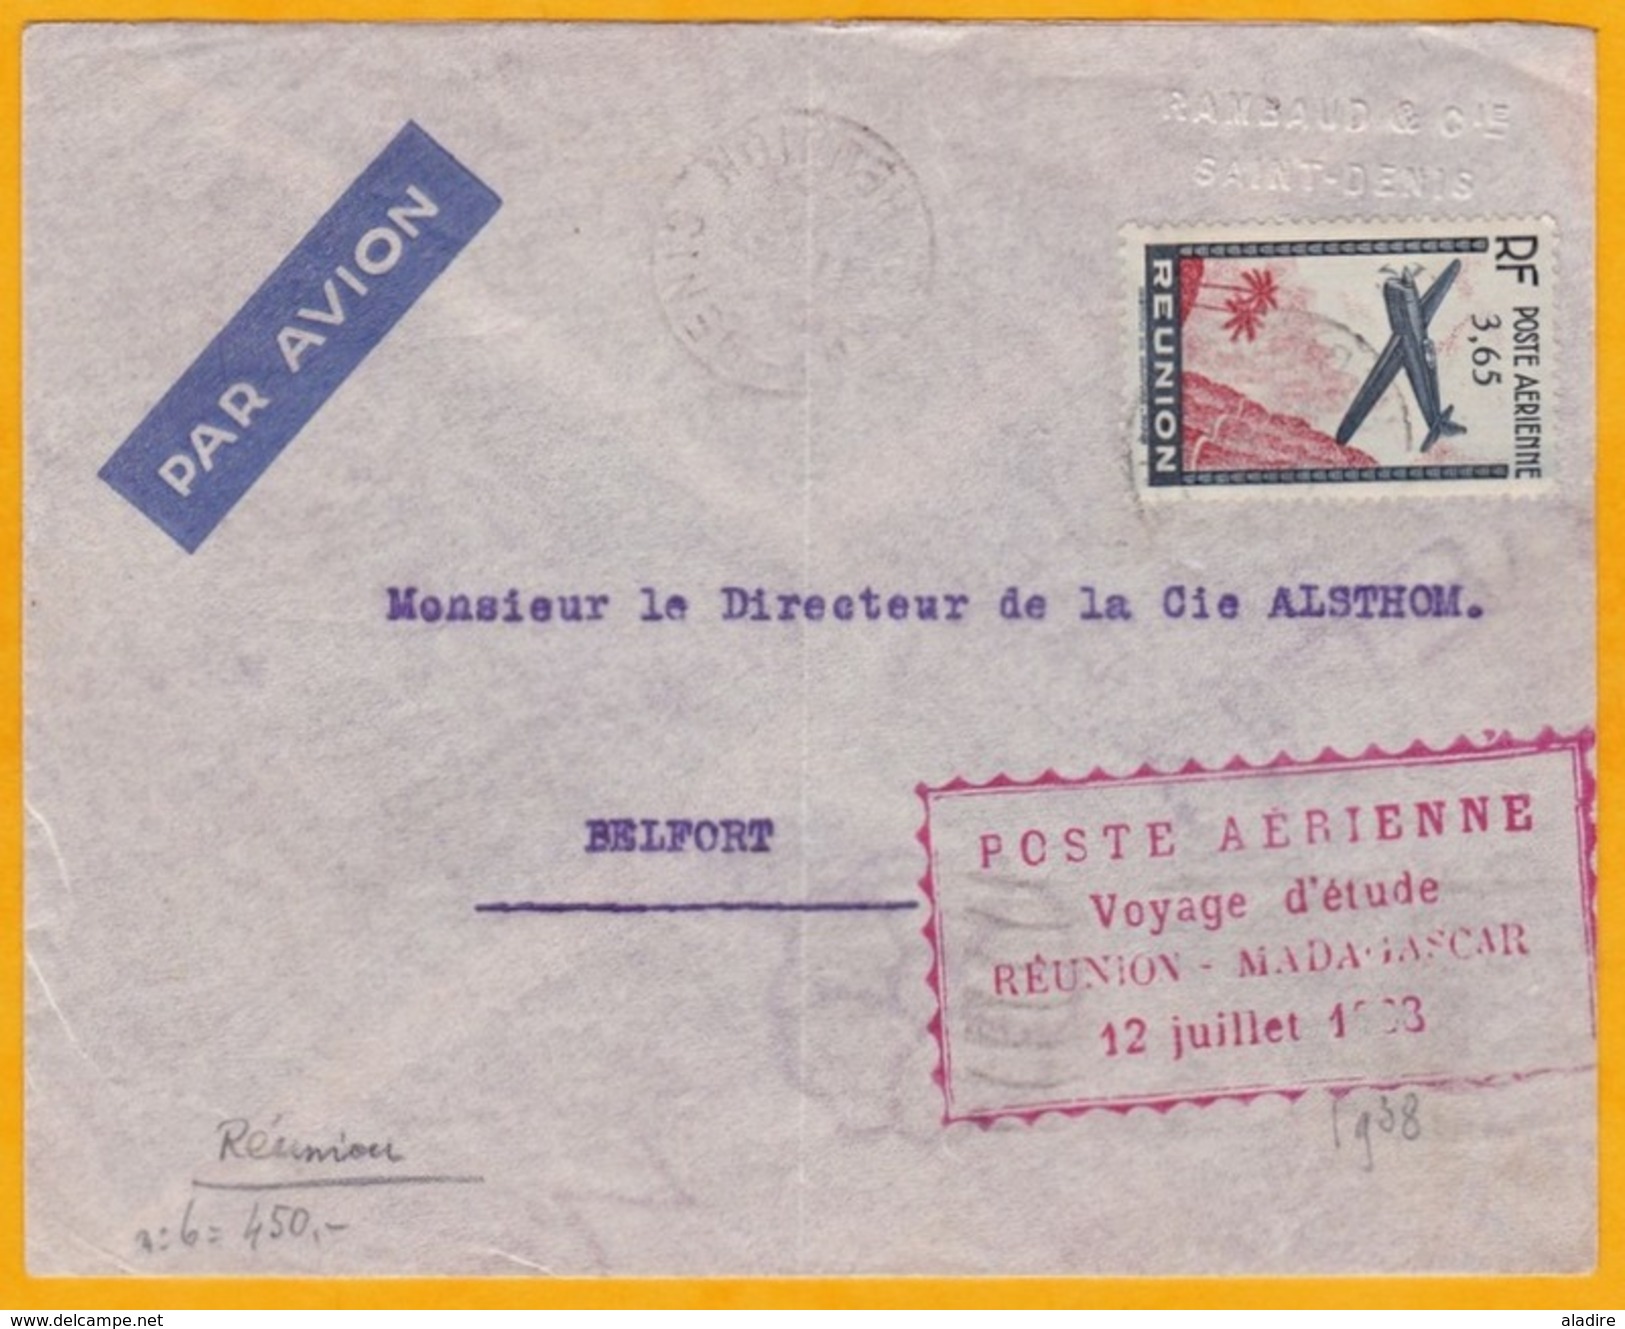 1938 - Enveloppe Par Avion Saint  Denis, Réunion Vers Belfort Via Voyage D'études Réunion-Madagascar - Cad Transit - Tp - Poste Aérienne